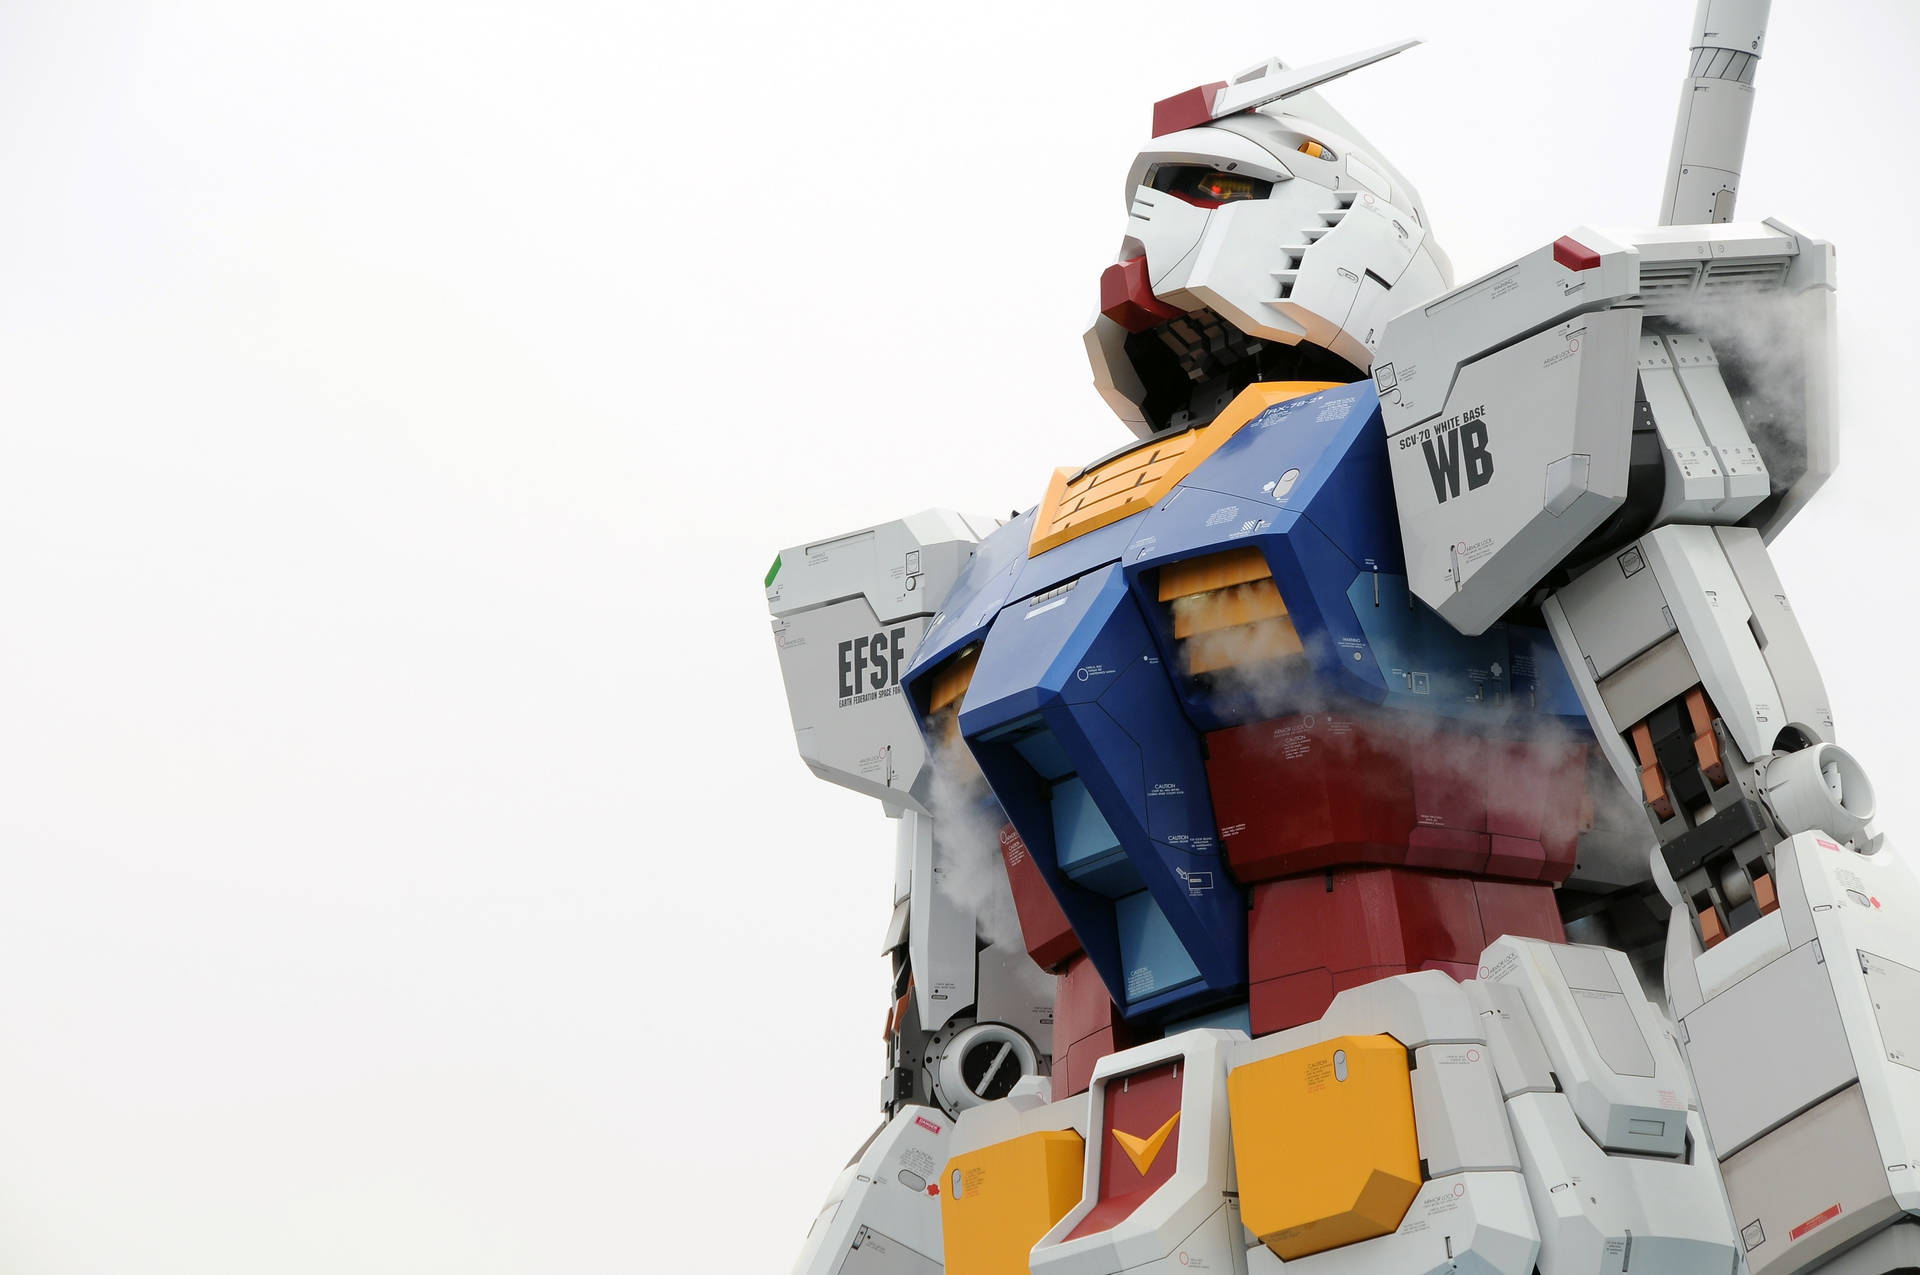 Rx-178 Mobile Suit Gundam Figure Wallpaper